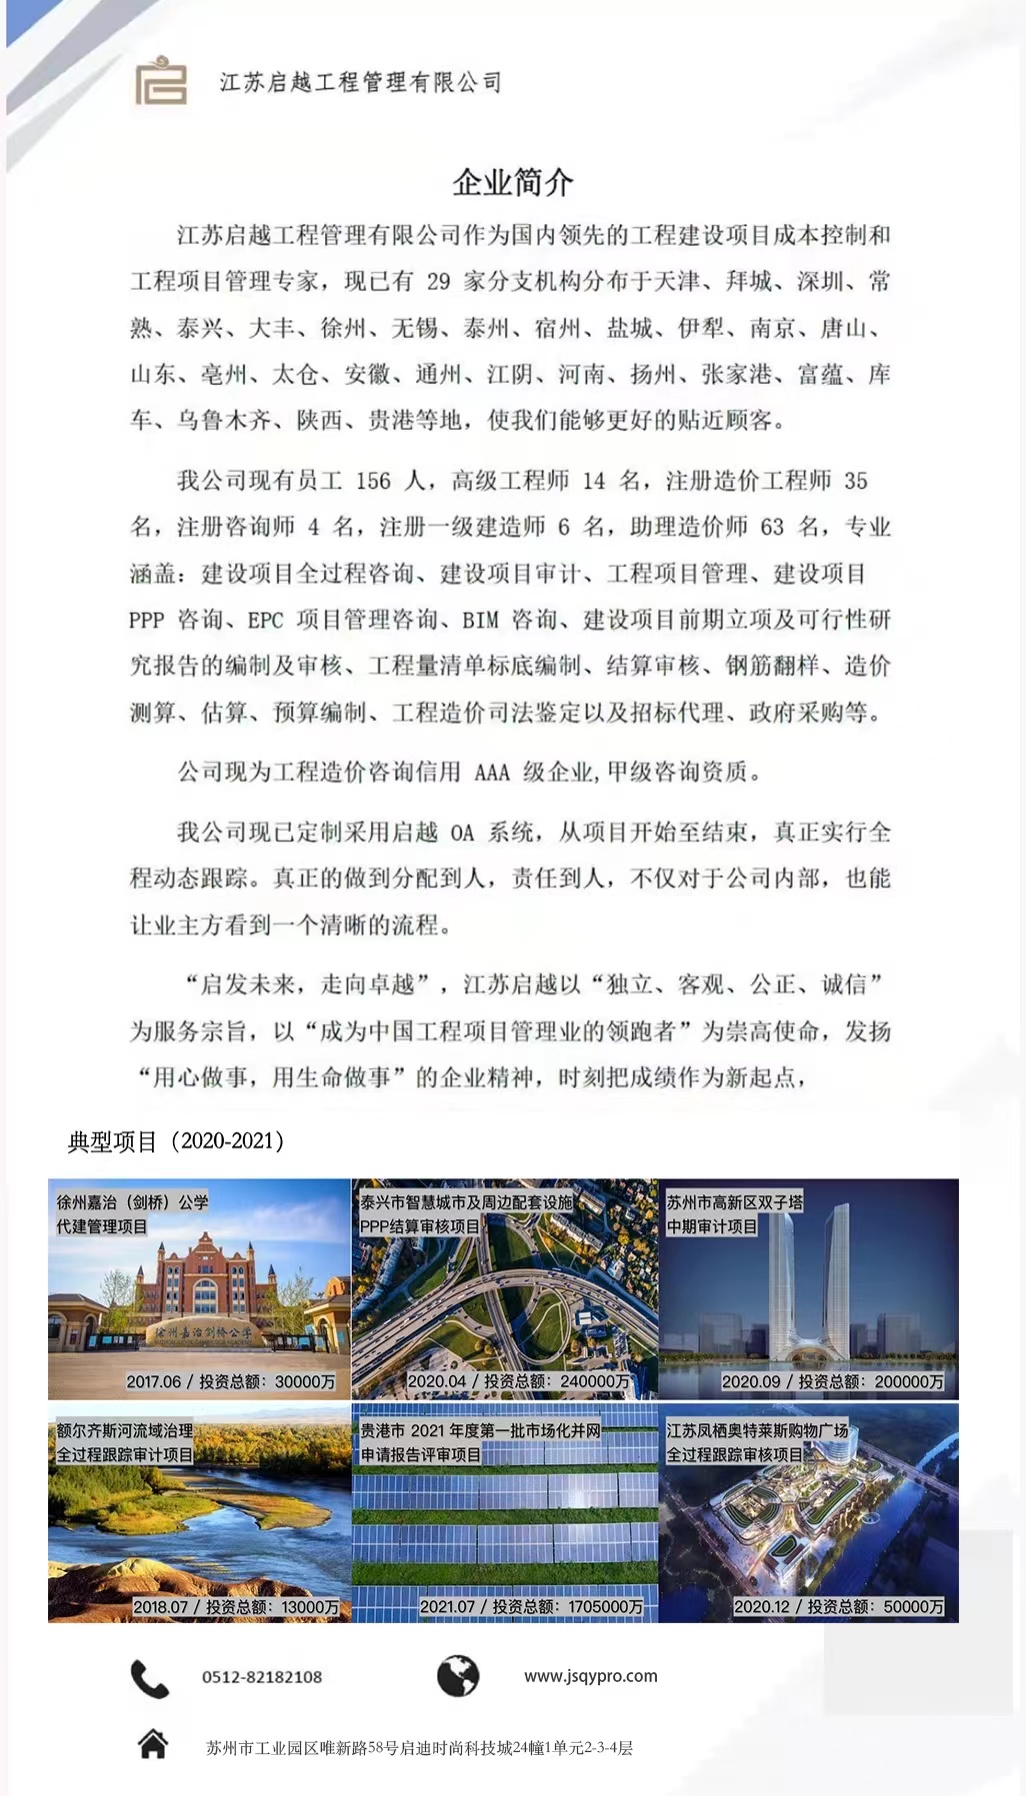 江蘇啟越工程管理有限公司